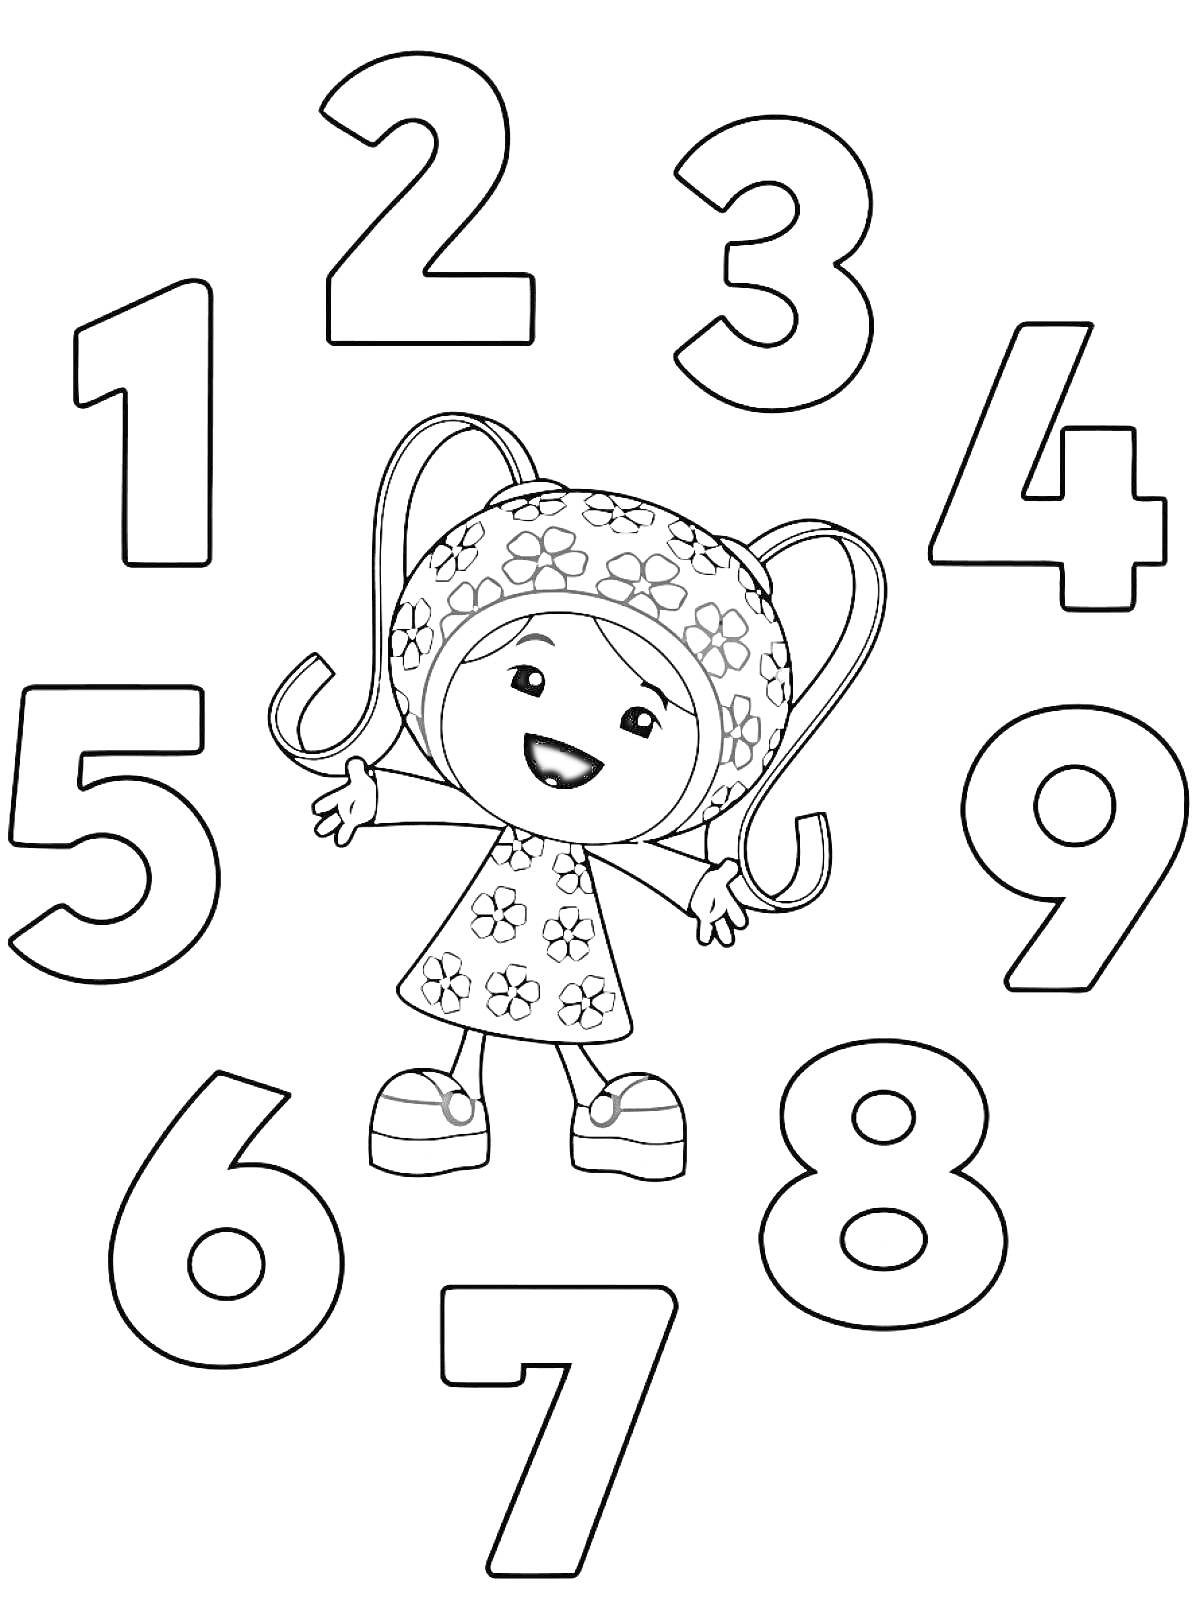 Девочка-робот в цветочном платье и числам от 1 до 9 вокруг неё